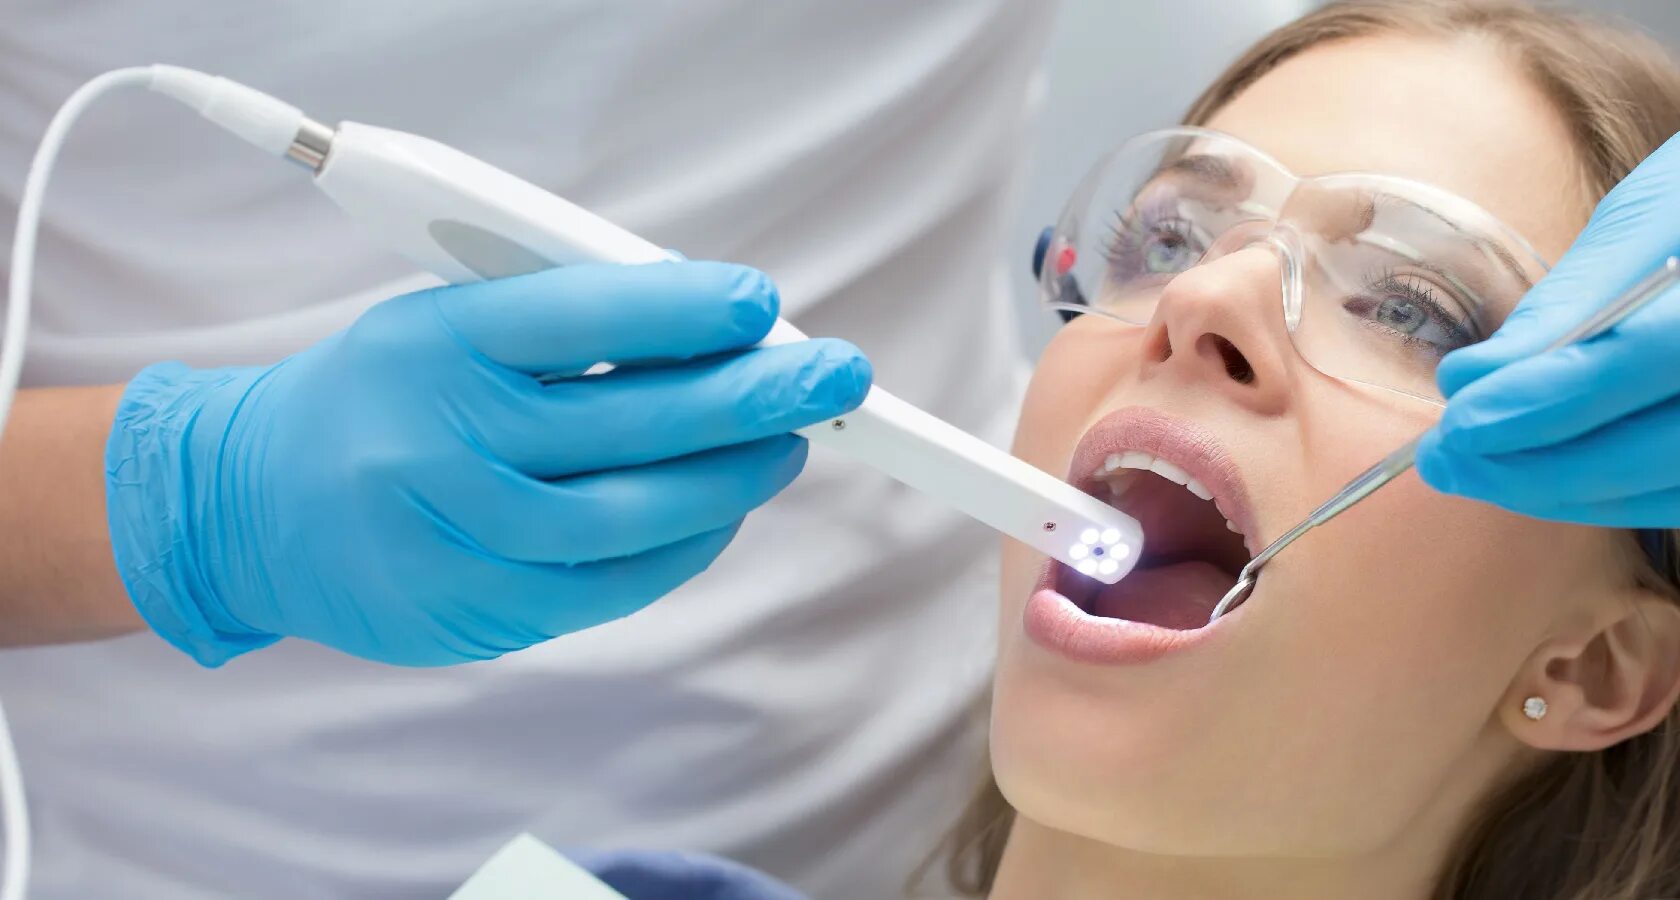 Профессиональная чистка зубов в стоматологии. Профгигиена (ультразвук + Air-Flow). Профессиональная гигиена полости рта. Профессиональная гигиена зубов. Профессиональная гигиена полости рта в стоматологии.